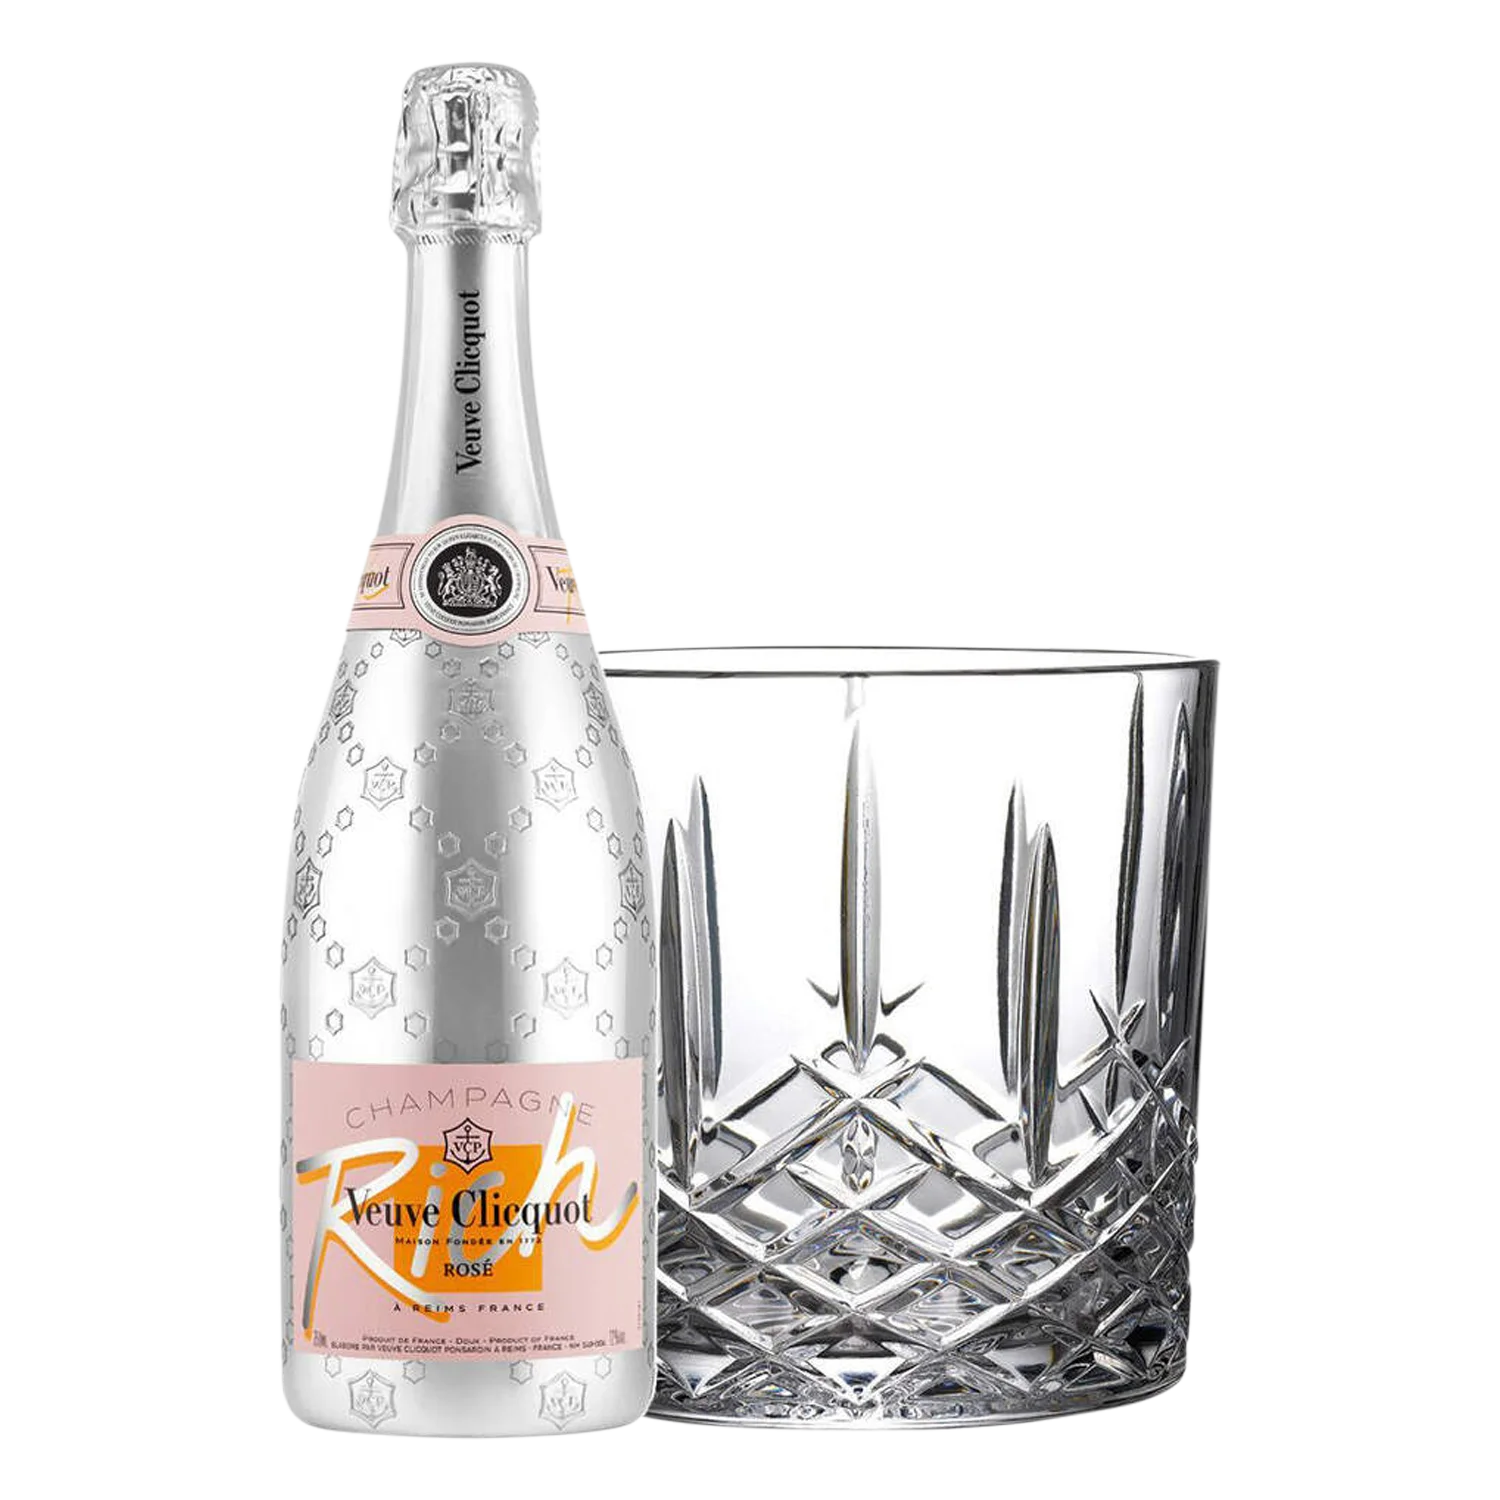 Ruinart Rosé Champagne, 75cl